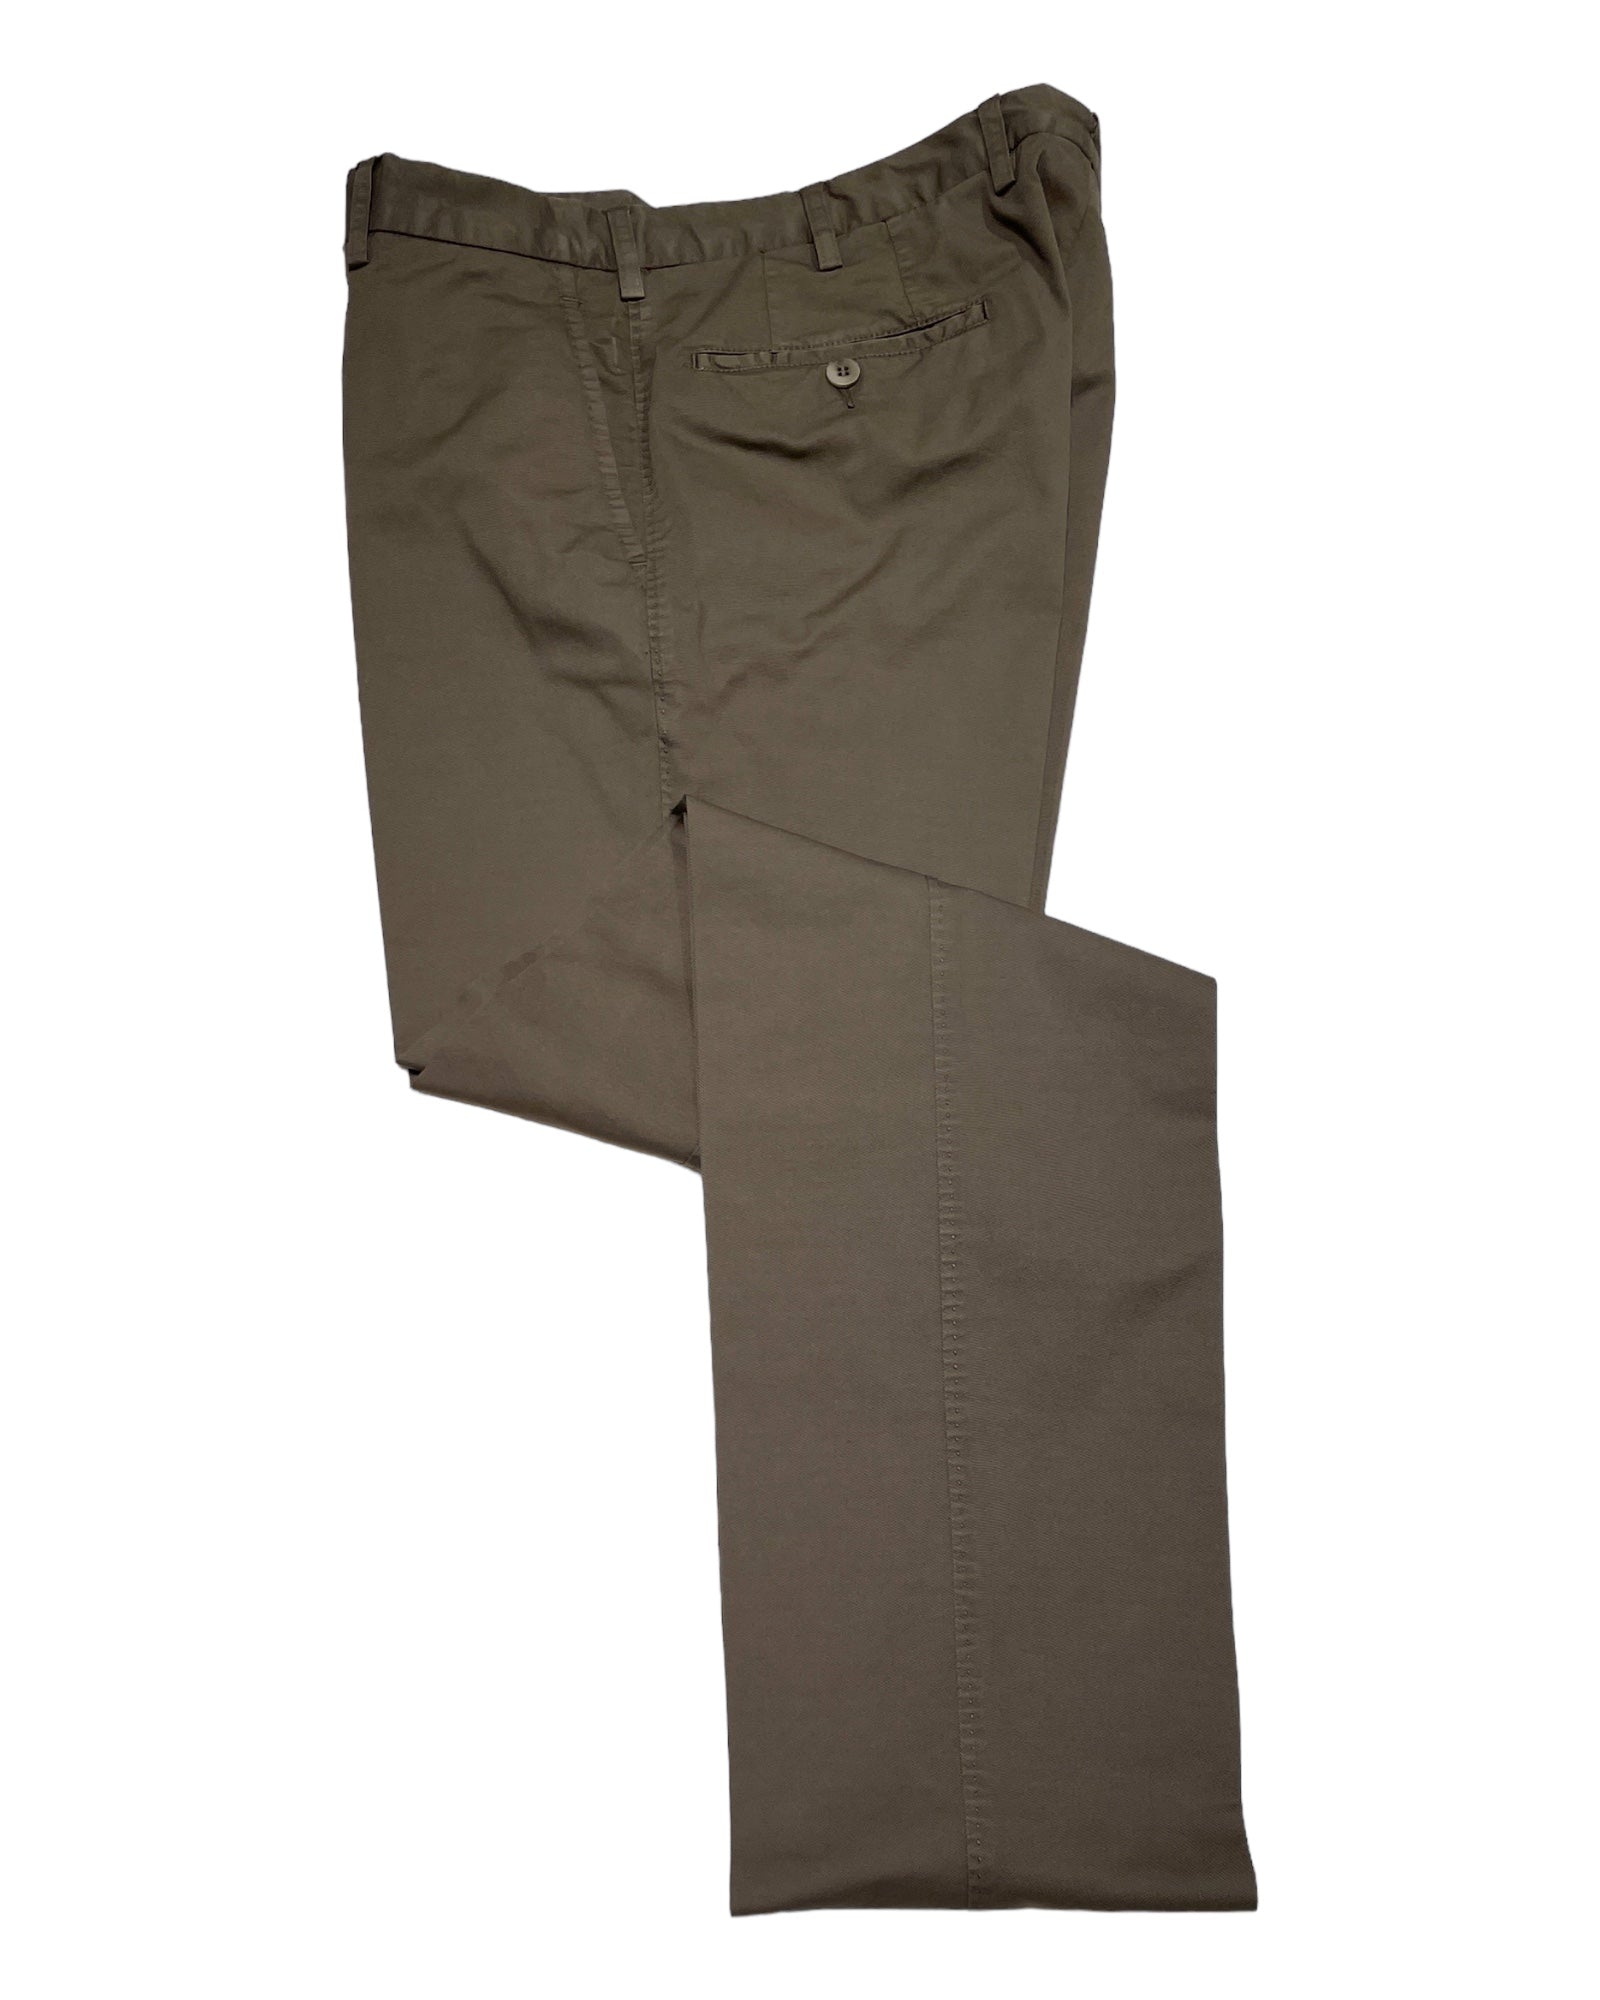 Lightweight Flat-front Casual Pant - Khaki CASUAL PANTS48 EU